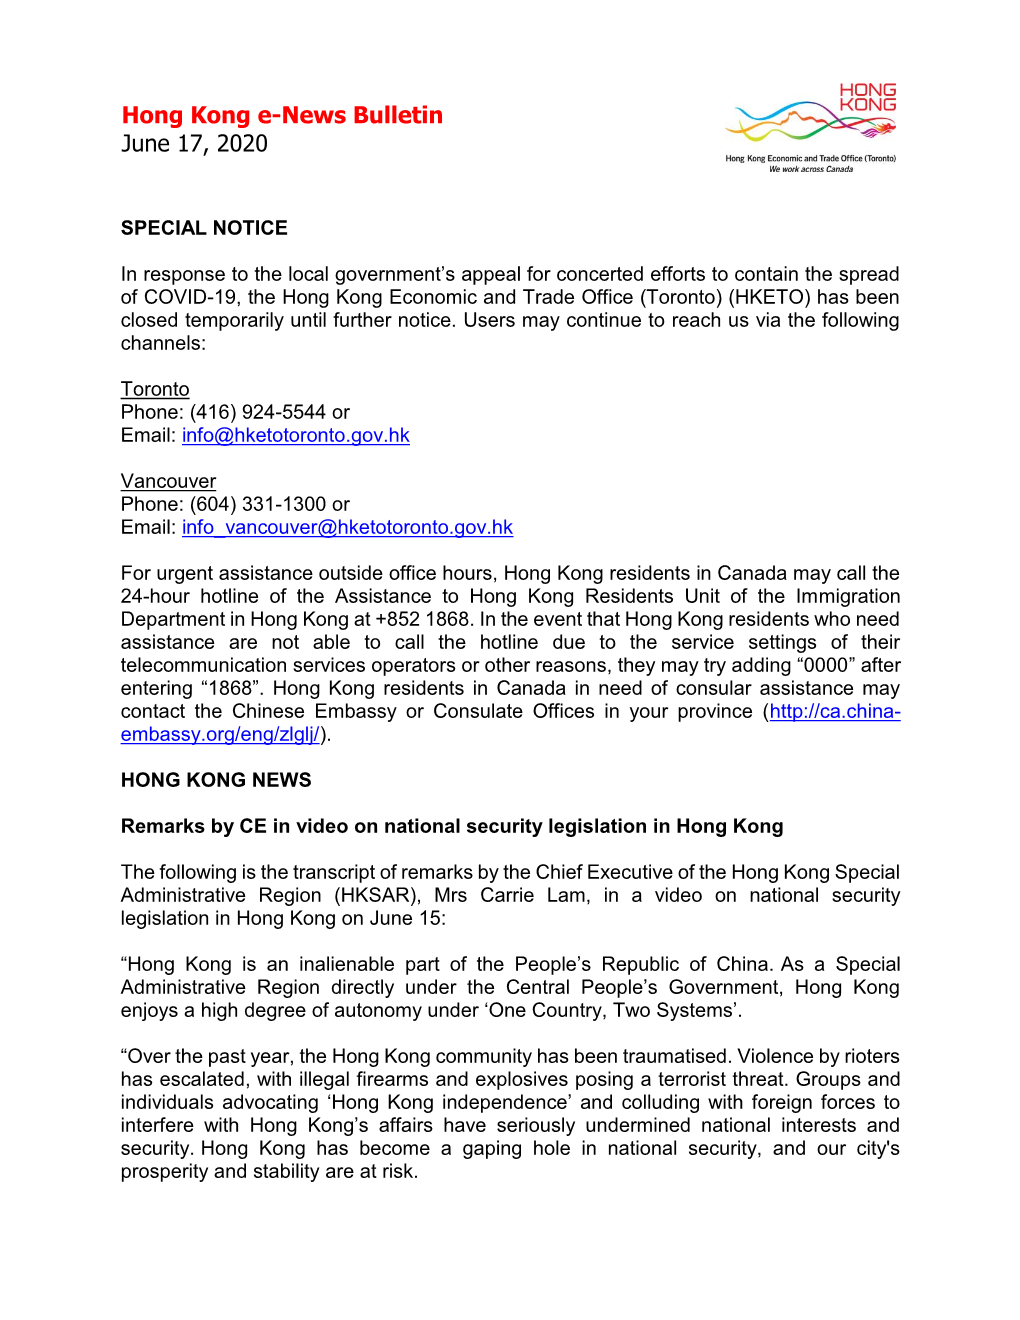 Hong Kong E-News Bulletin June 17, 2020